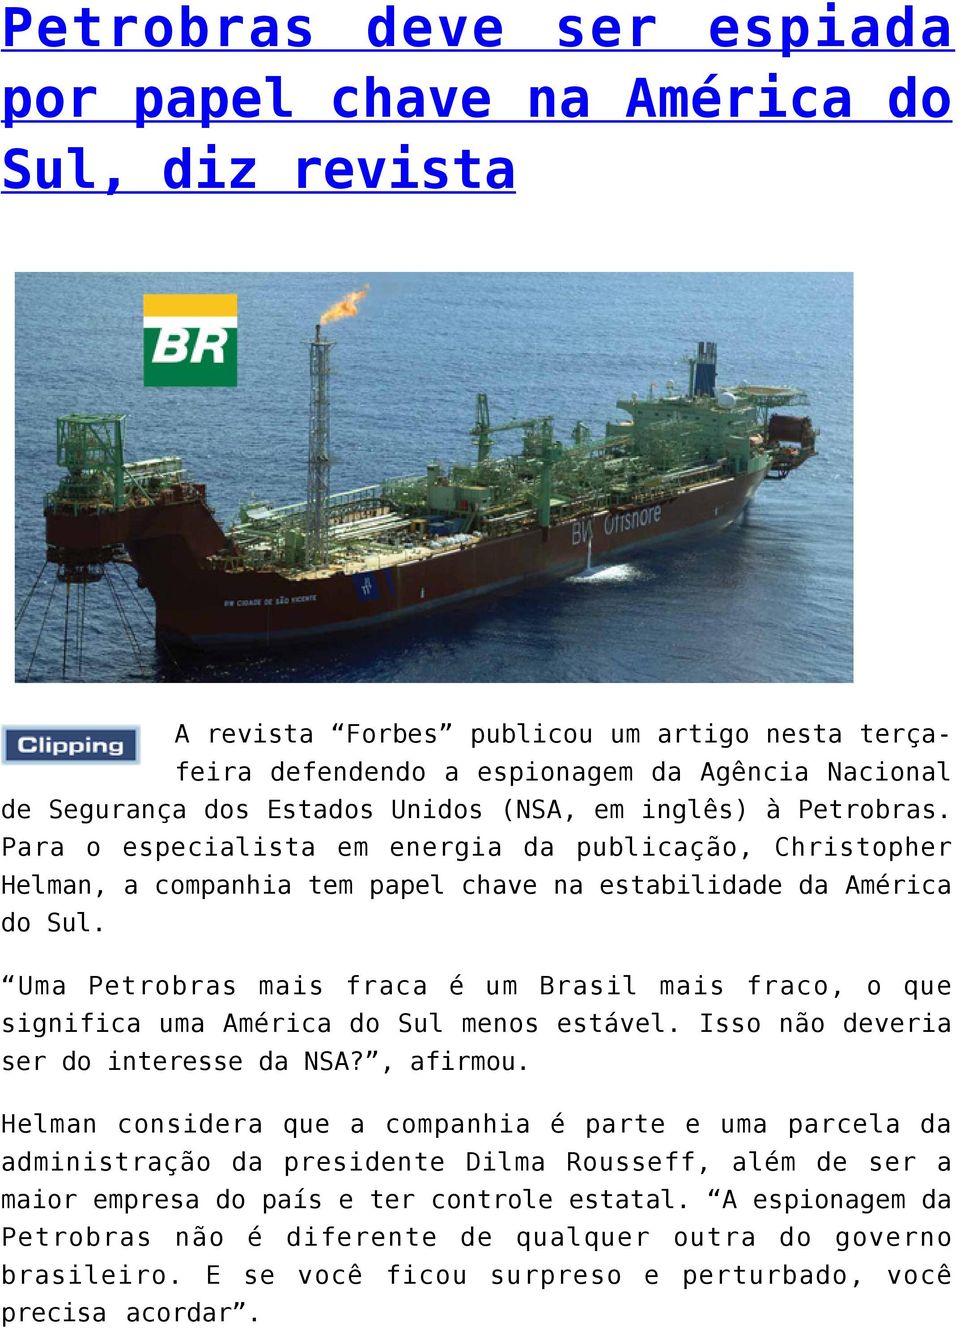 Uma Petrobras mais fraca é um Brasil mais fraco, o que significa uma América do Sul menos estável. Isso não deveria ser do interesse da NSA?, afirmou.